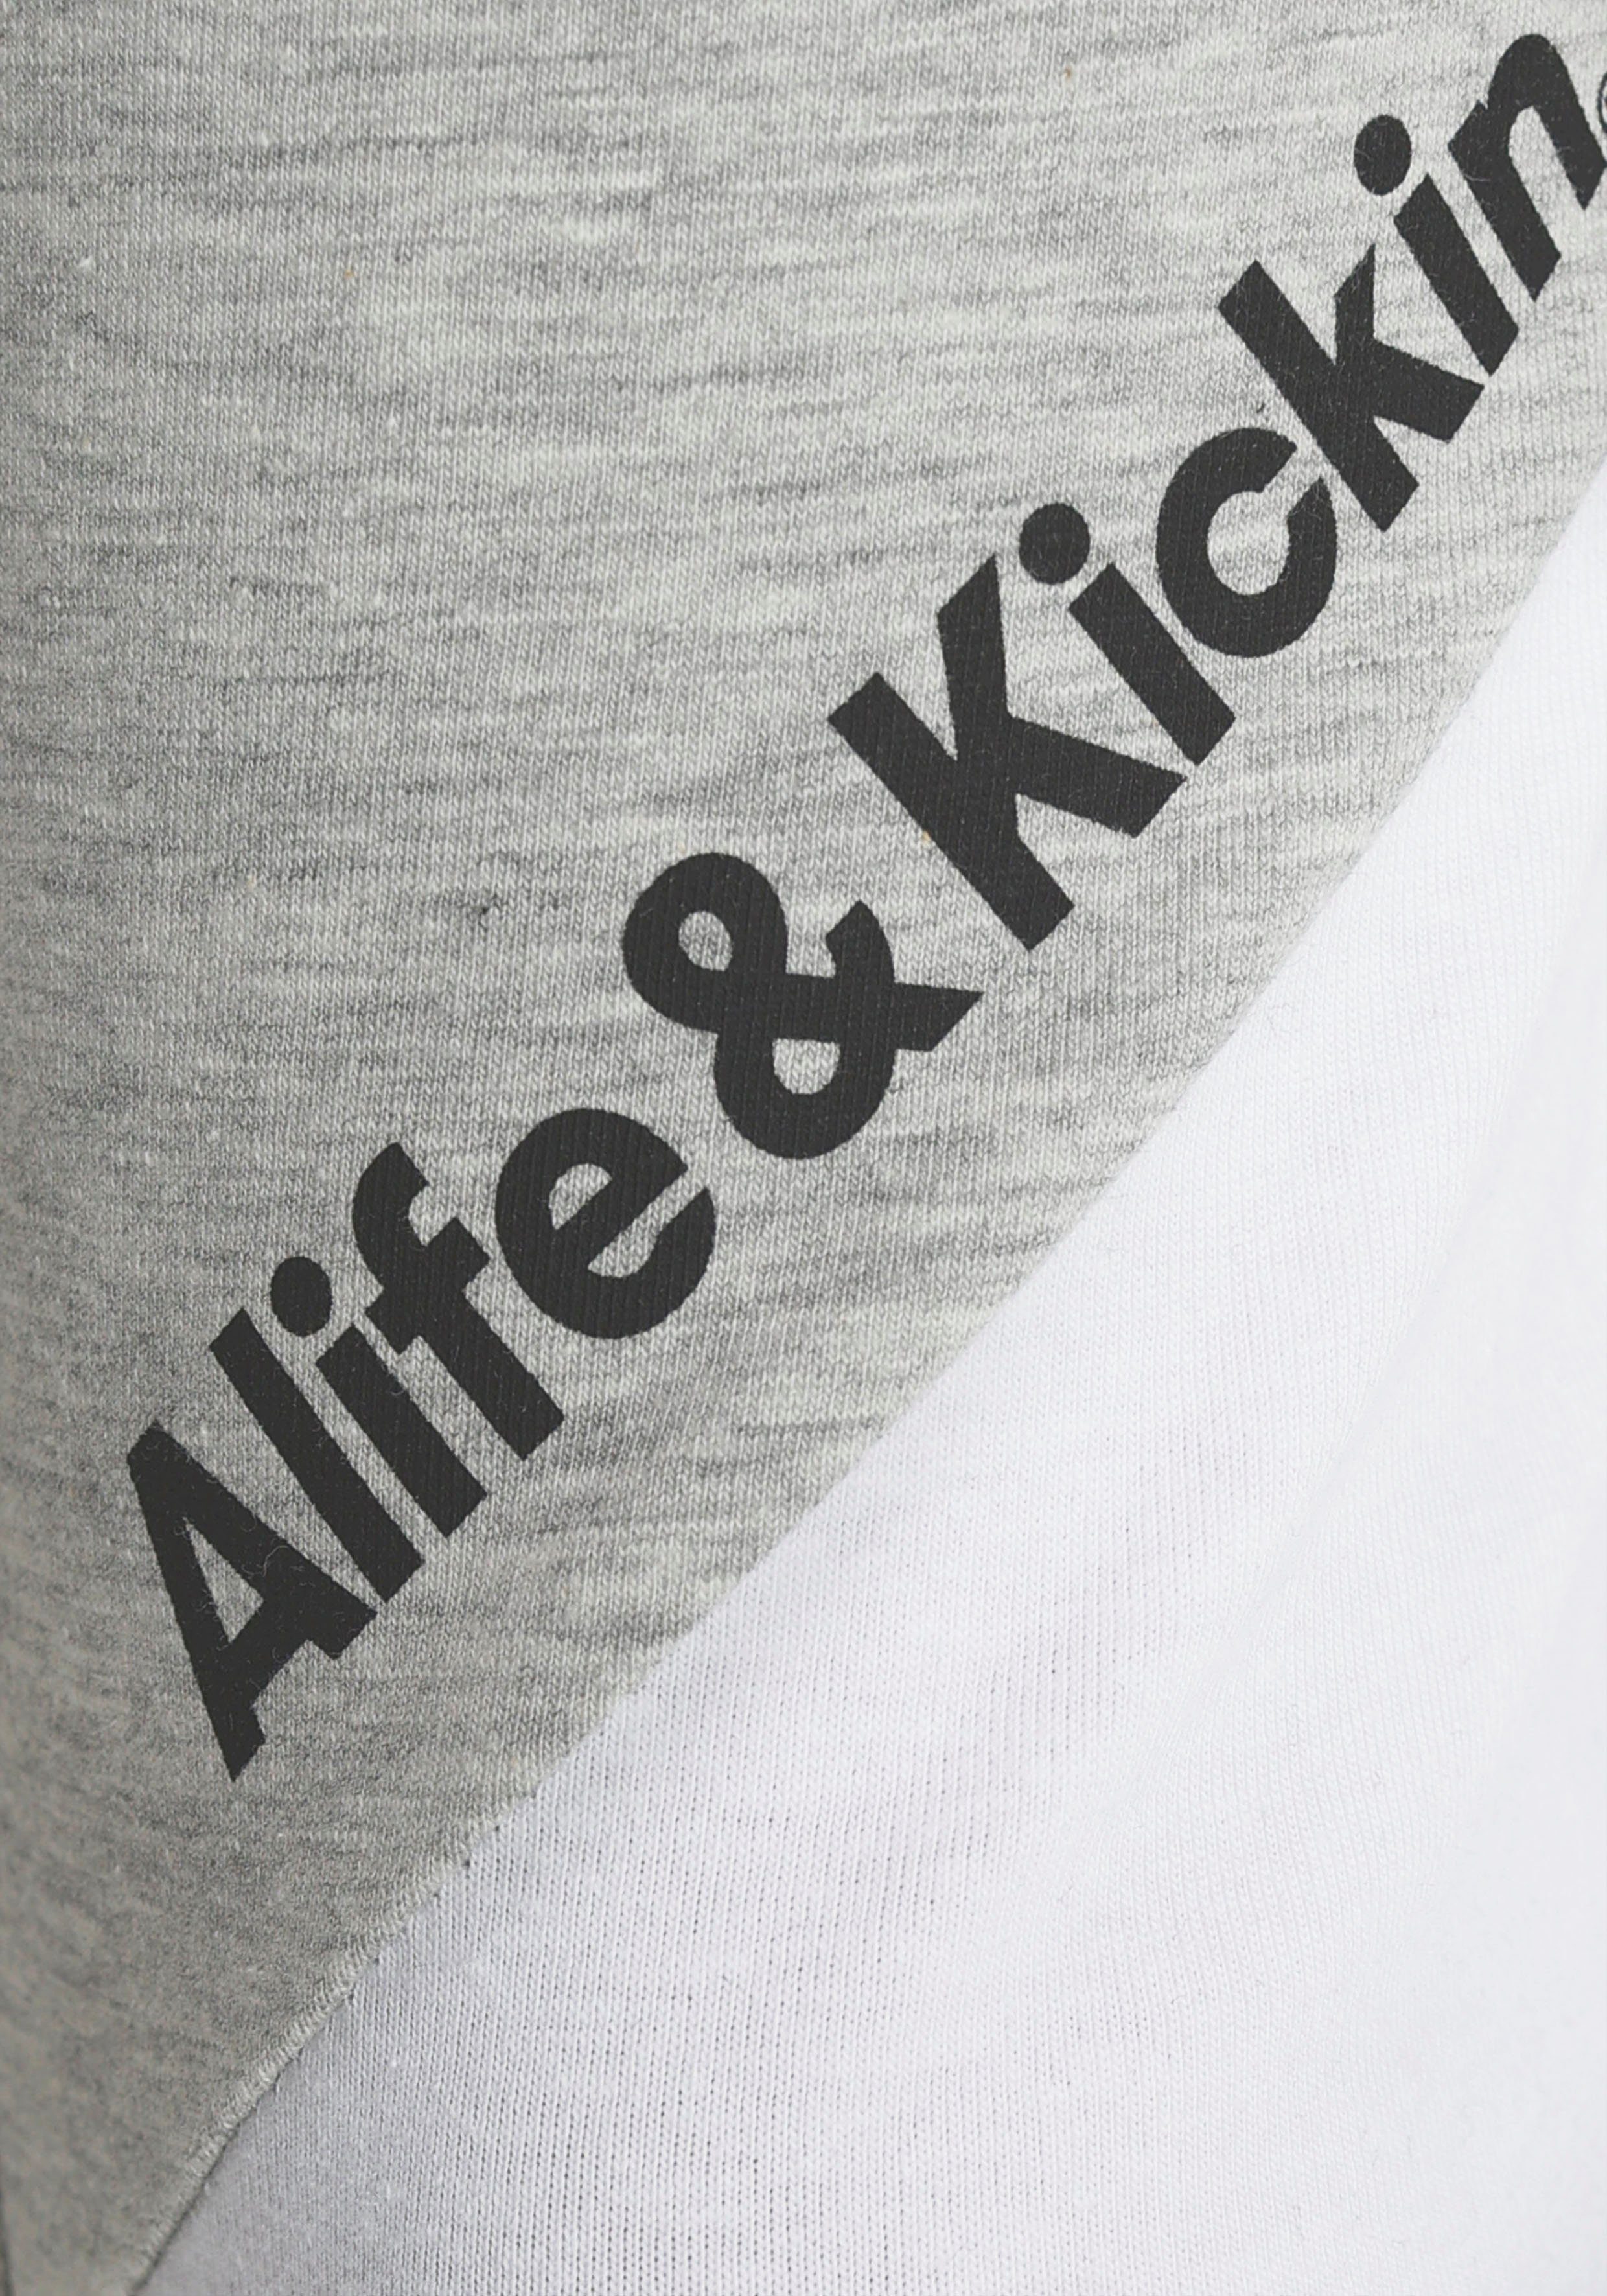 MARKE! & Kickin Logo Leggings NEUE Alife für & Druck Kids. Kickin mit Alife